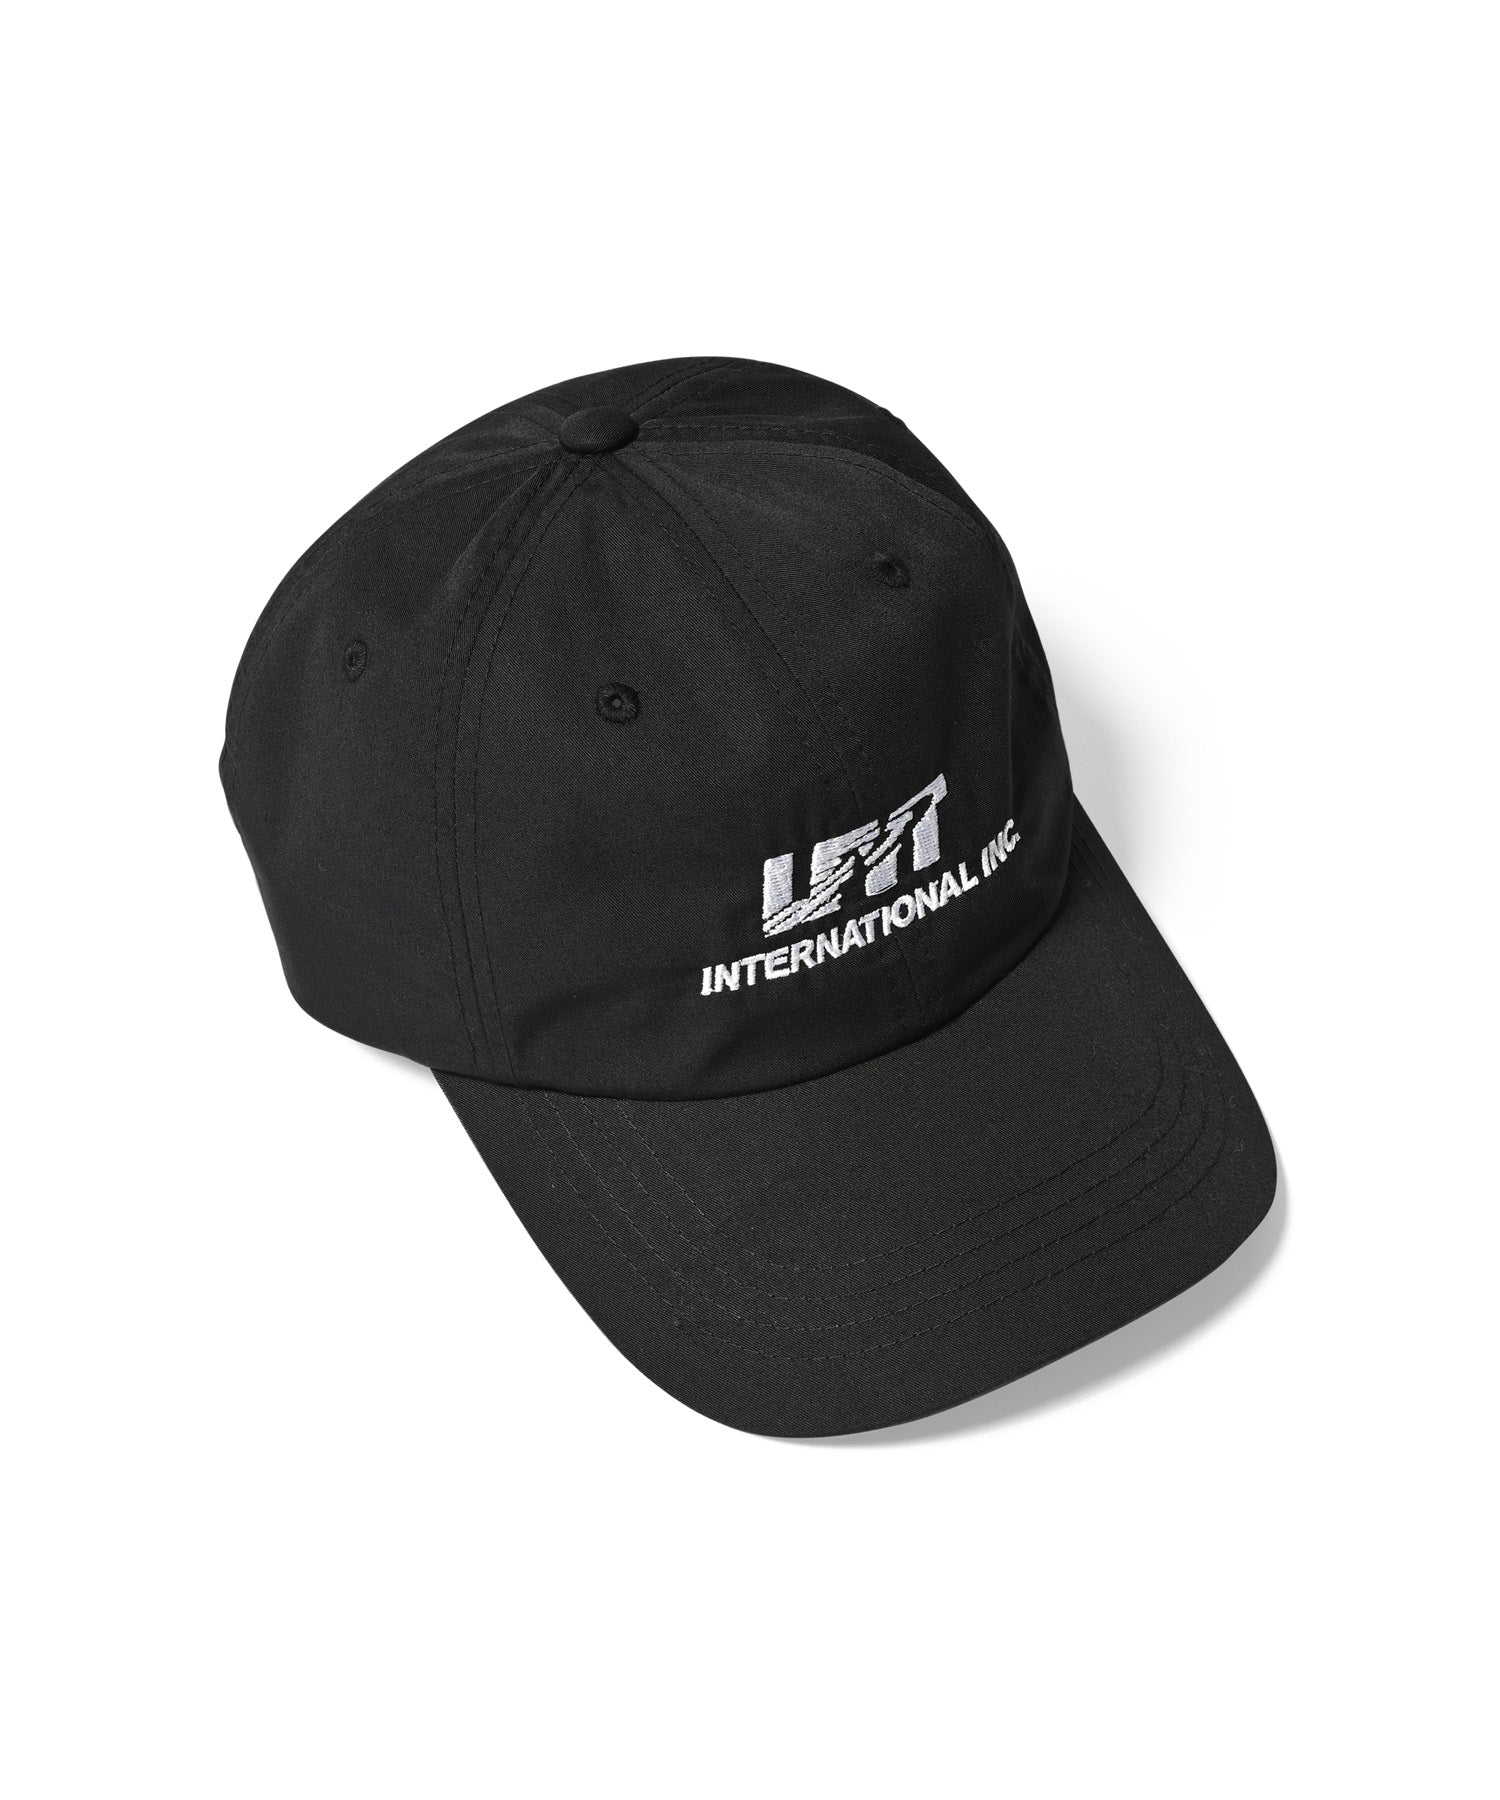 LFYT - LFYT International, Inc. DAD HAT LA231406